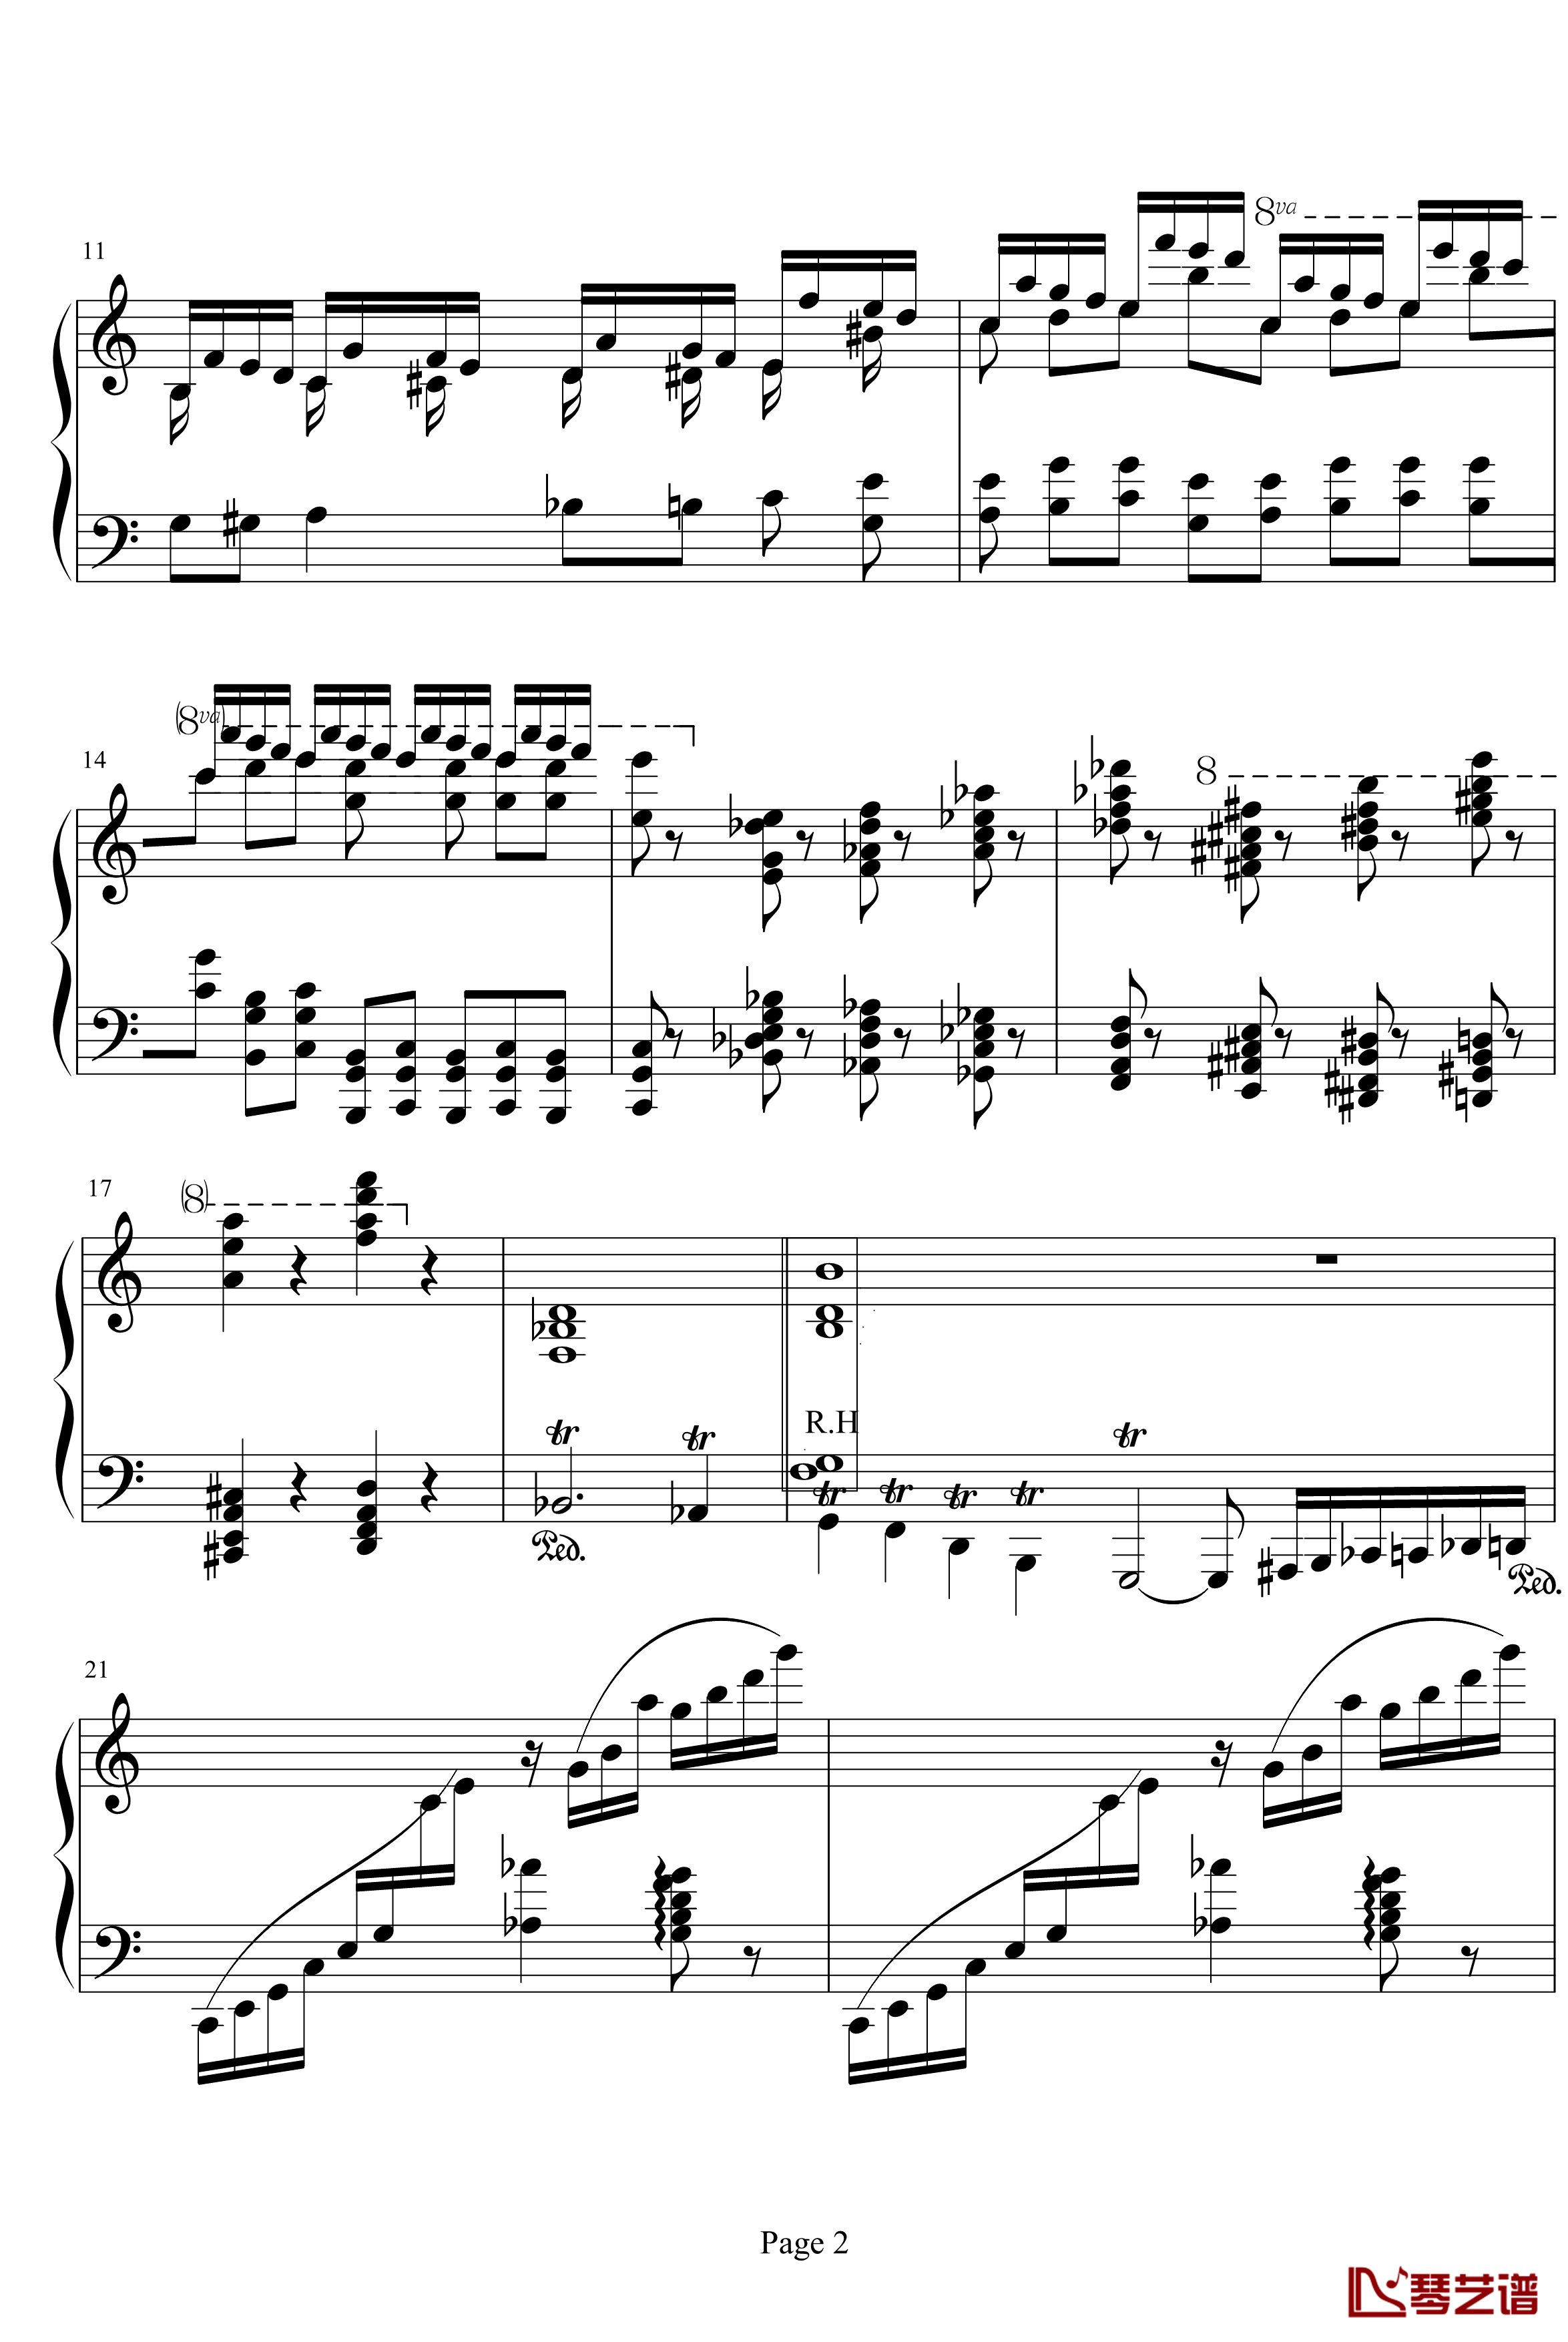 超凡练习曲第1首钢琴谱-李斯特2